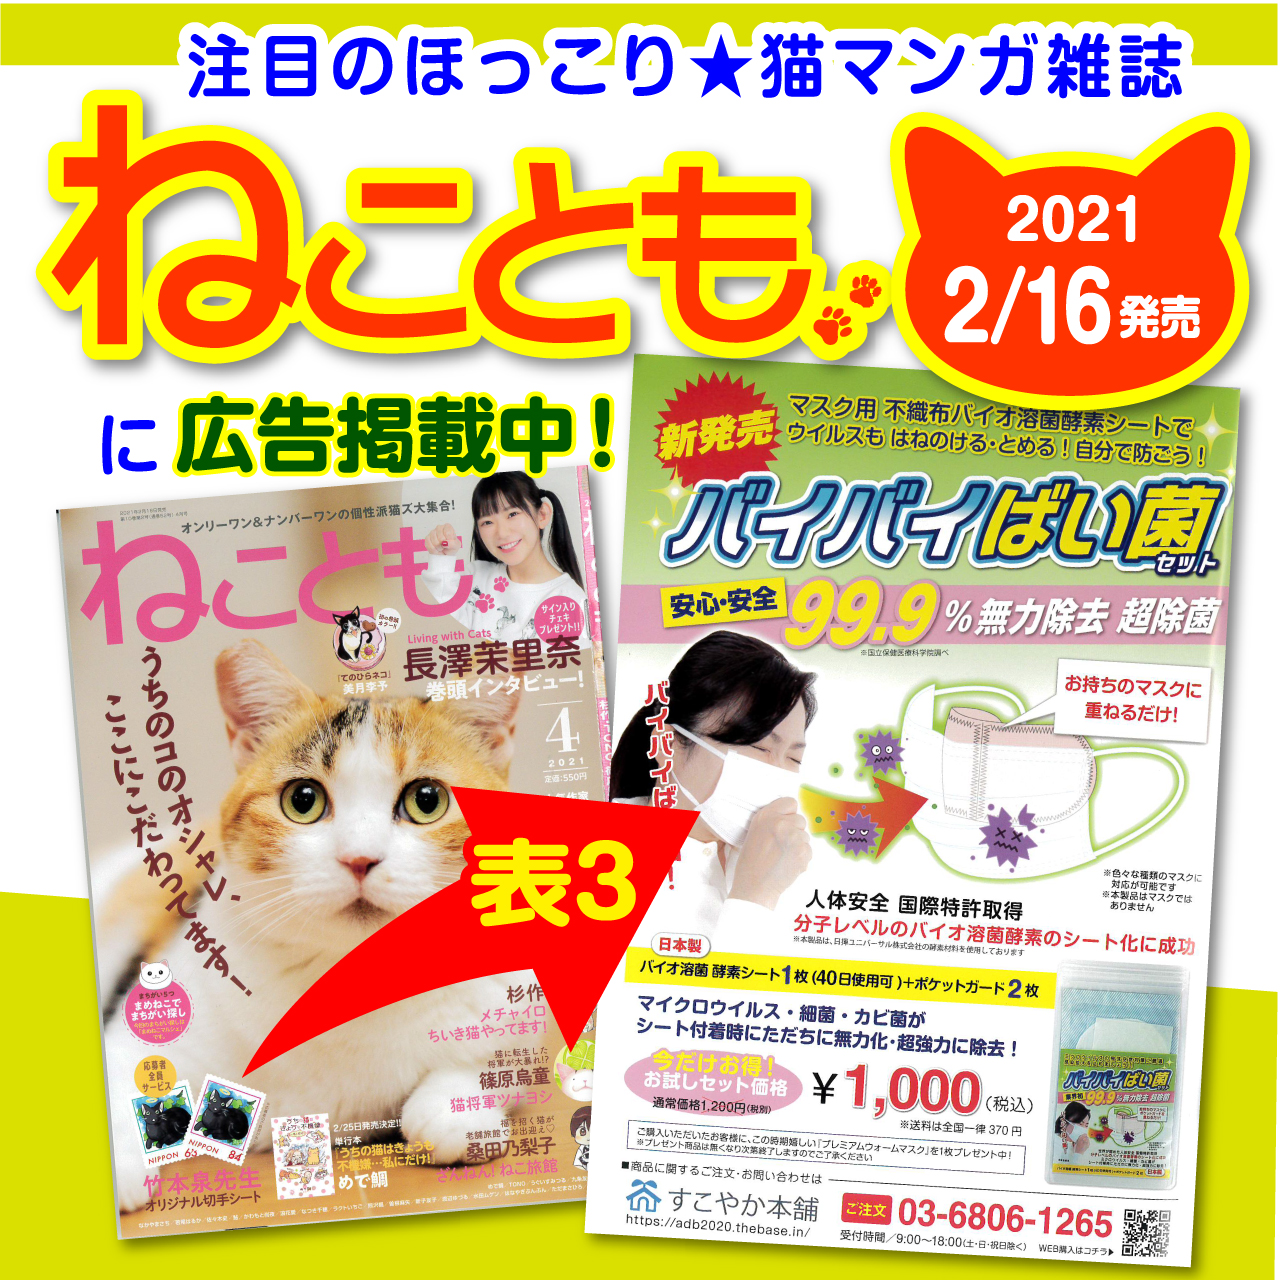 【広告掲載情報】ねこ好きさんに人気の猫雑誌『ねことも』に「バイバイばい菌セット」が掲載されました